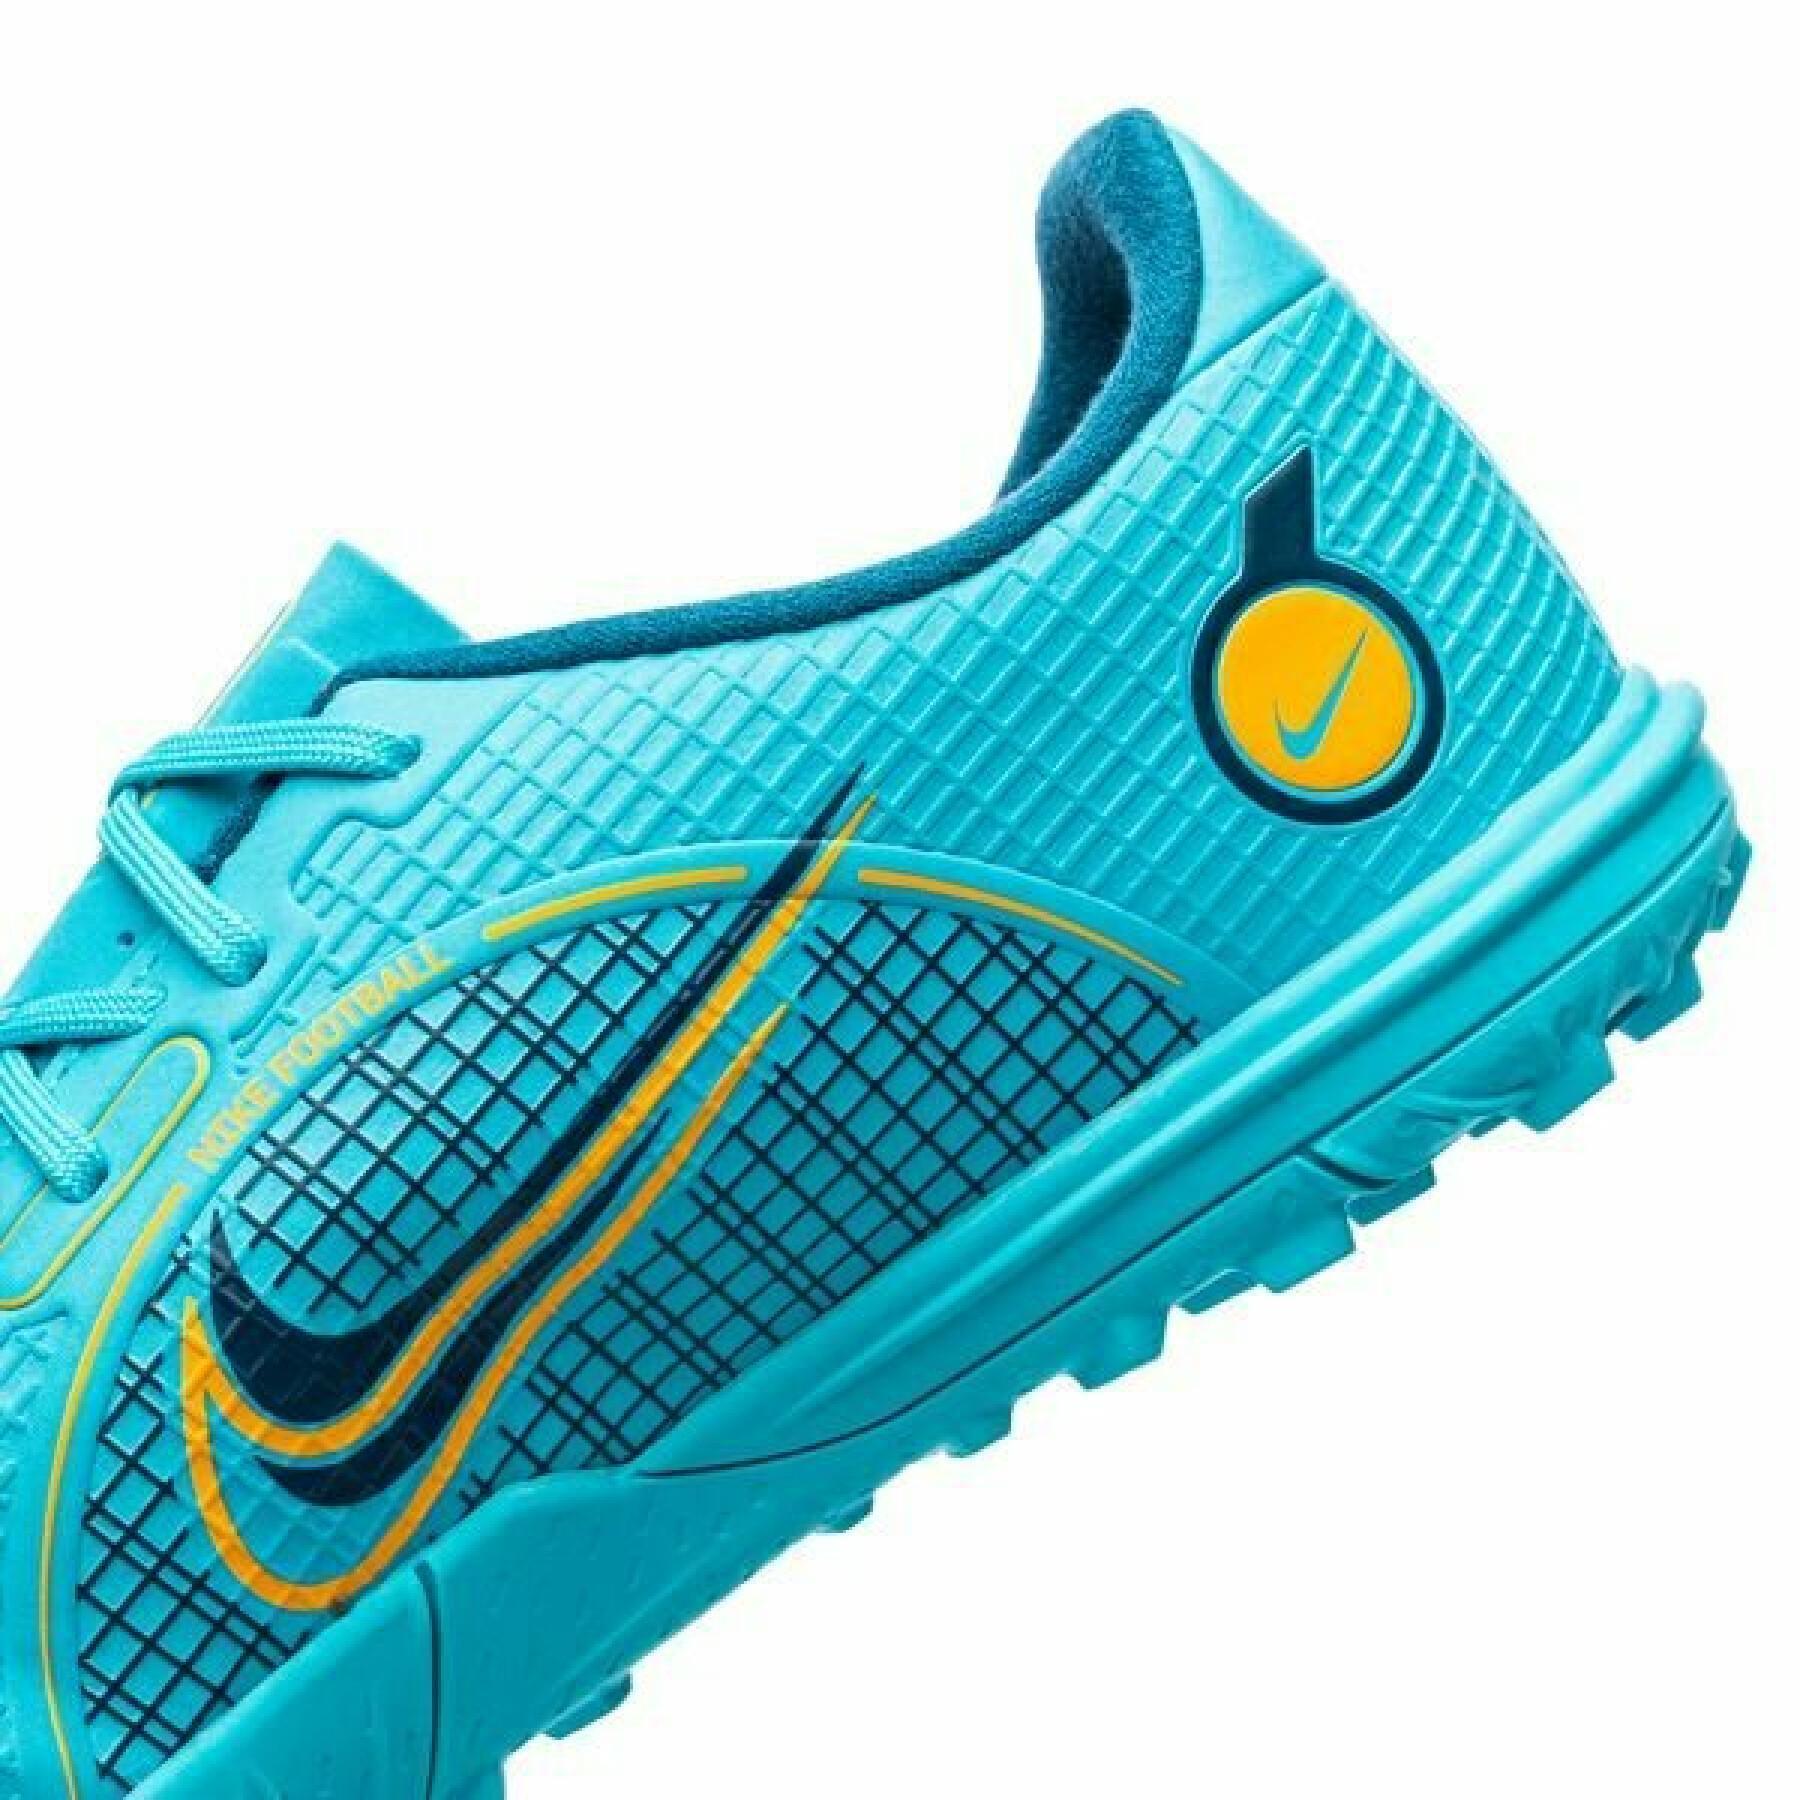 Voetbalschoenen voor kinderen Nike Jr vapor 14 academy TF -Blueprint Pack